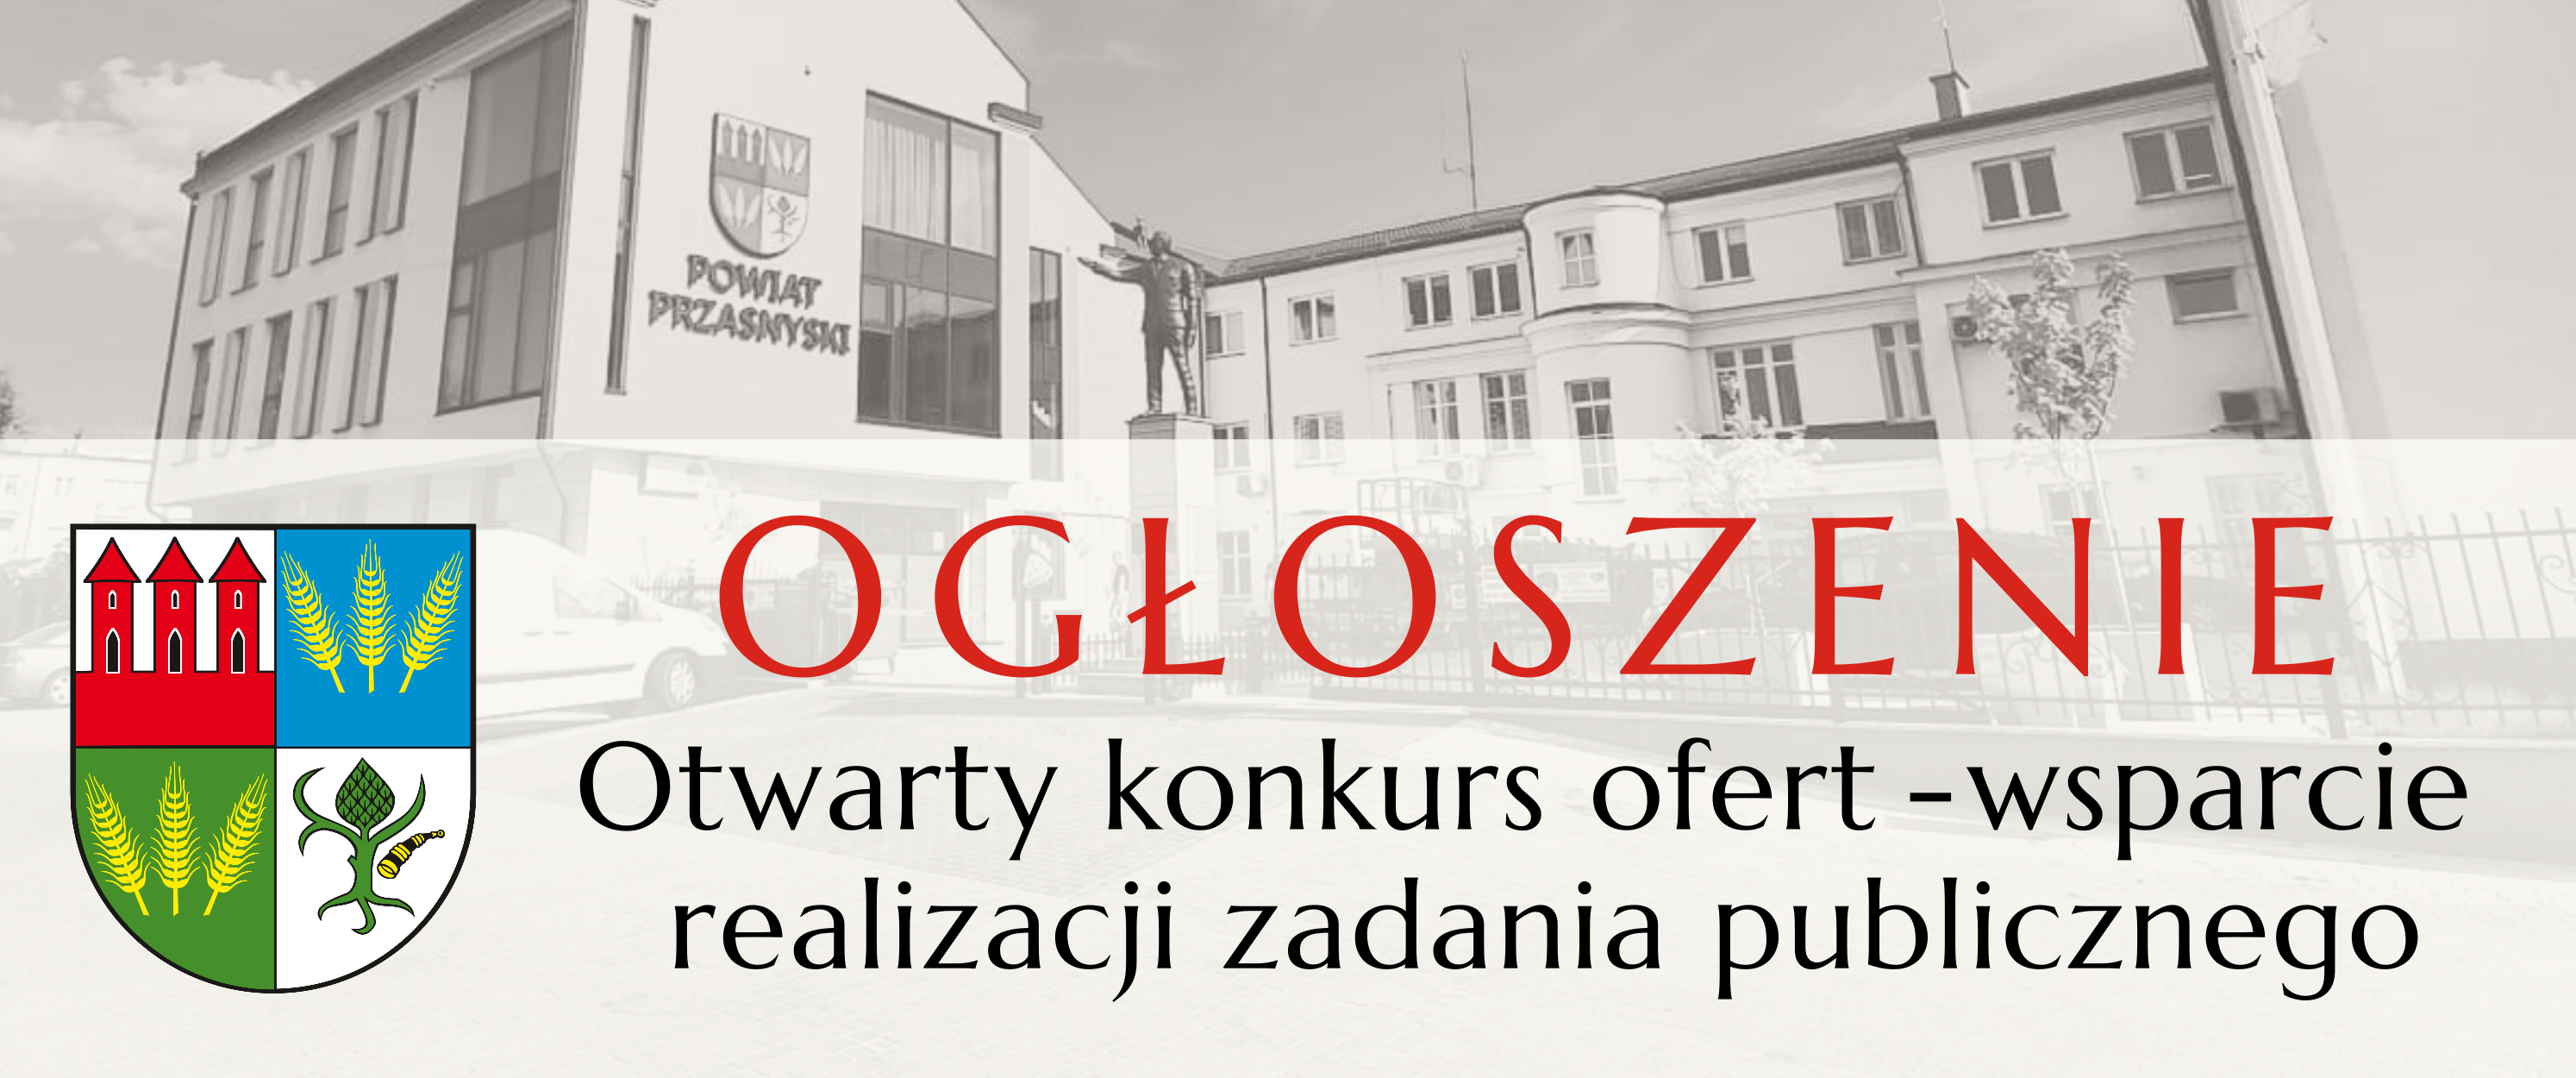 Grafika ogłoszenie z herbem Powiatu Przasnyskiego, konkurs ofert wsparcia realizacji zadań publicznych.